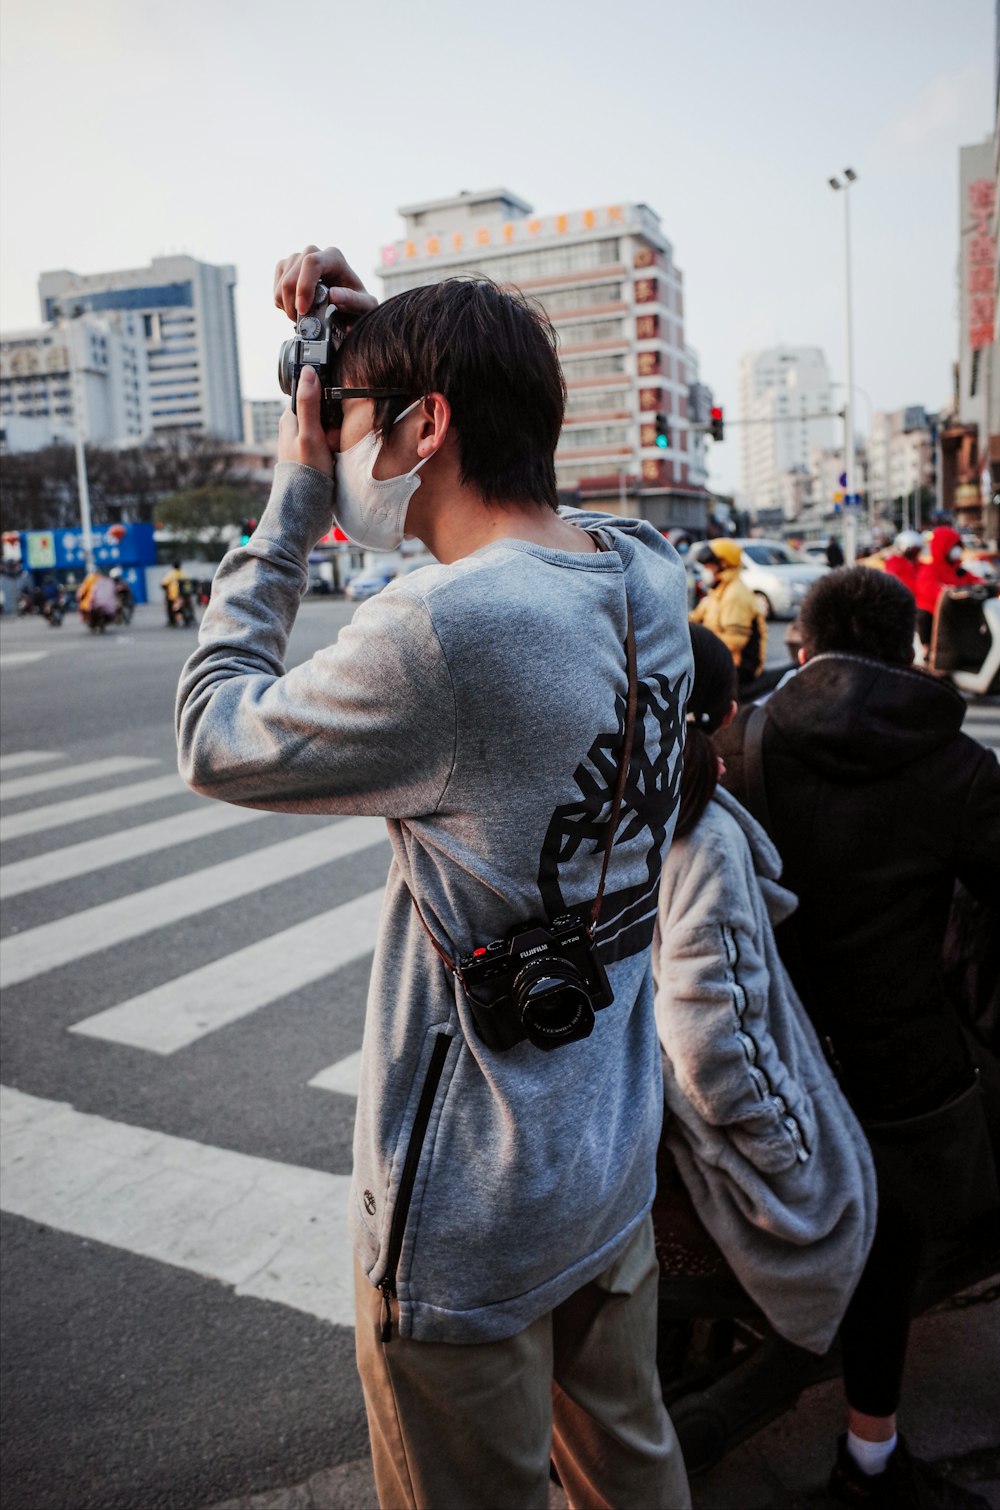 man in gray and black sweater taking photo of people walking on pedestrian lane during daytime